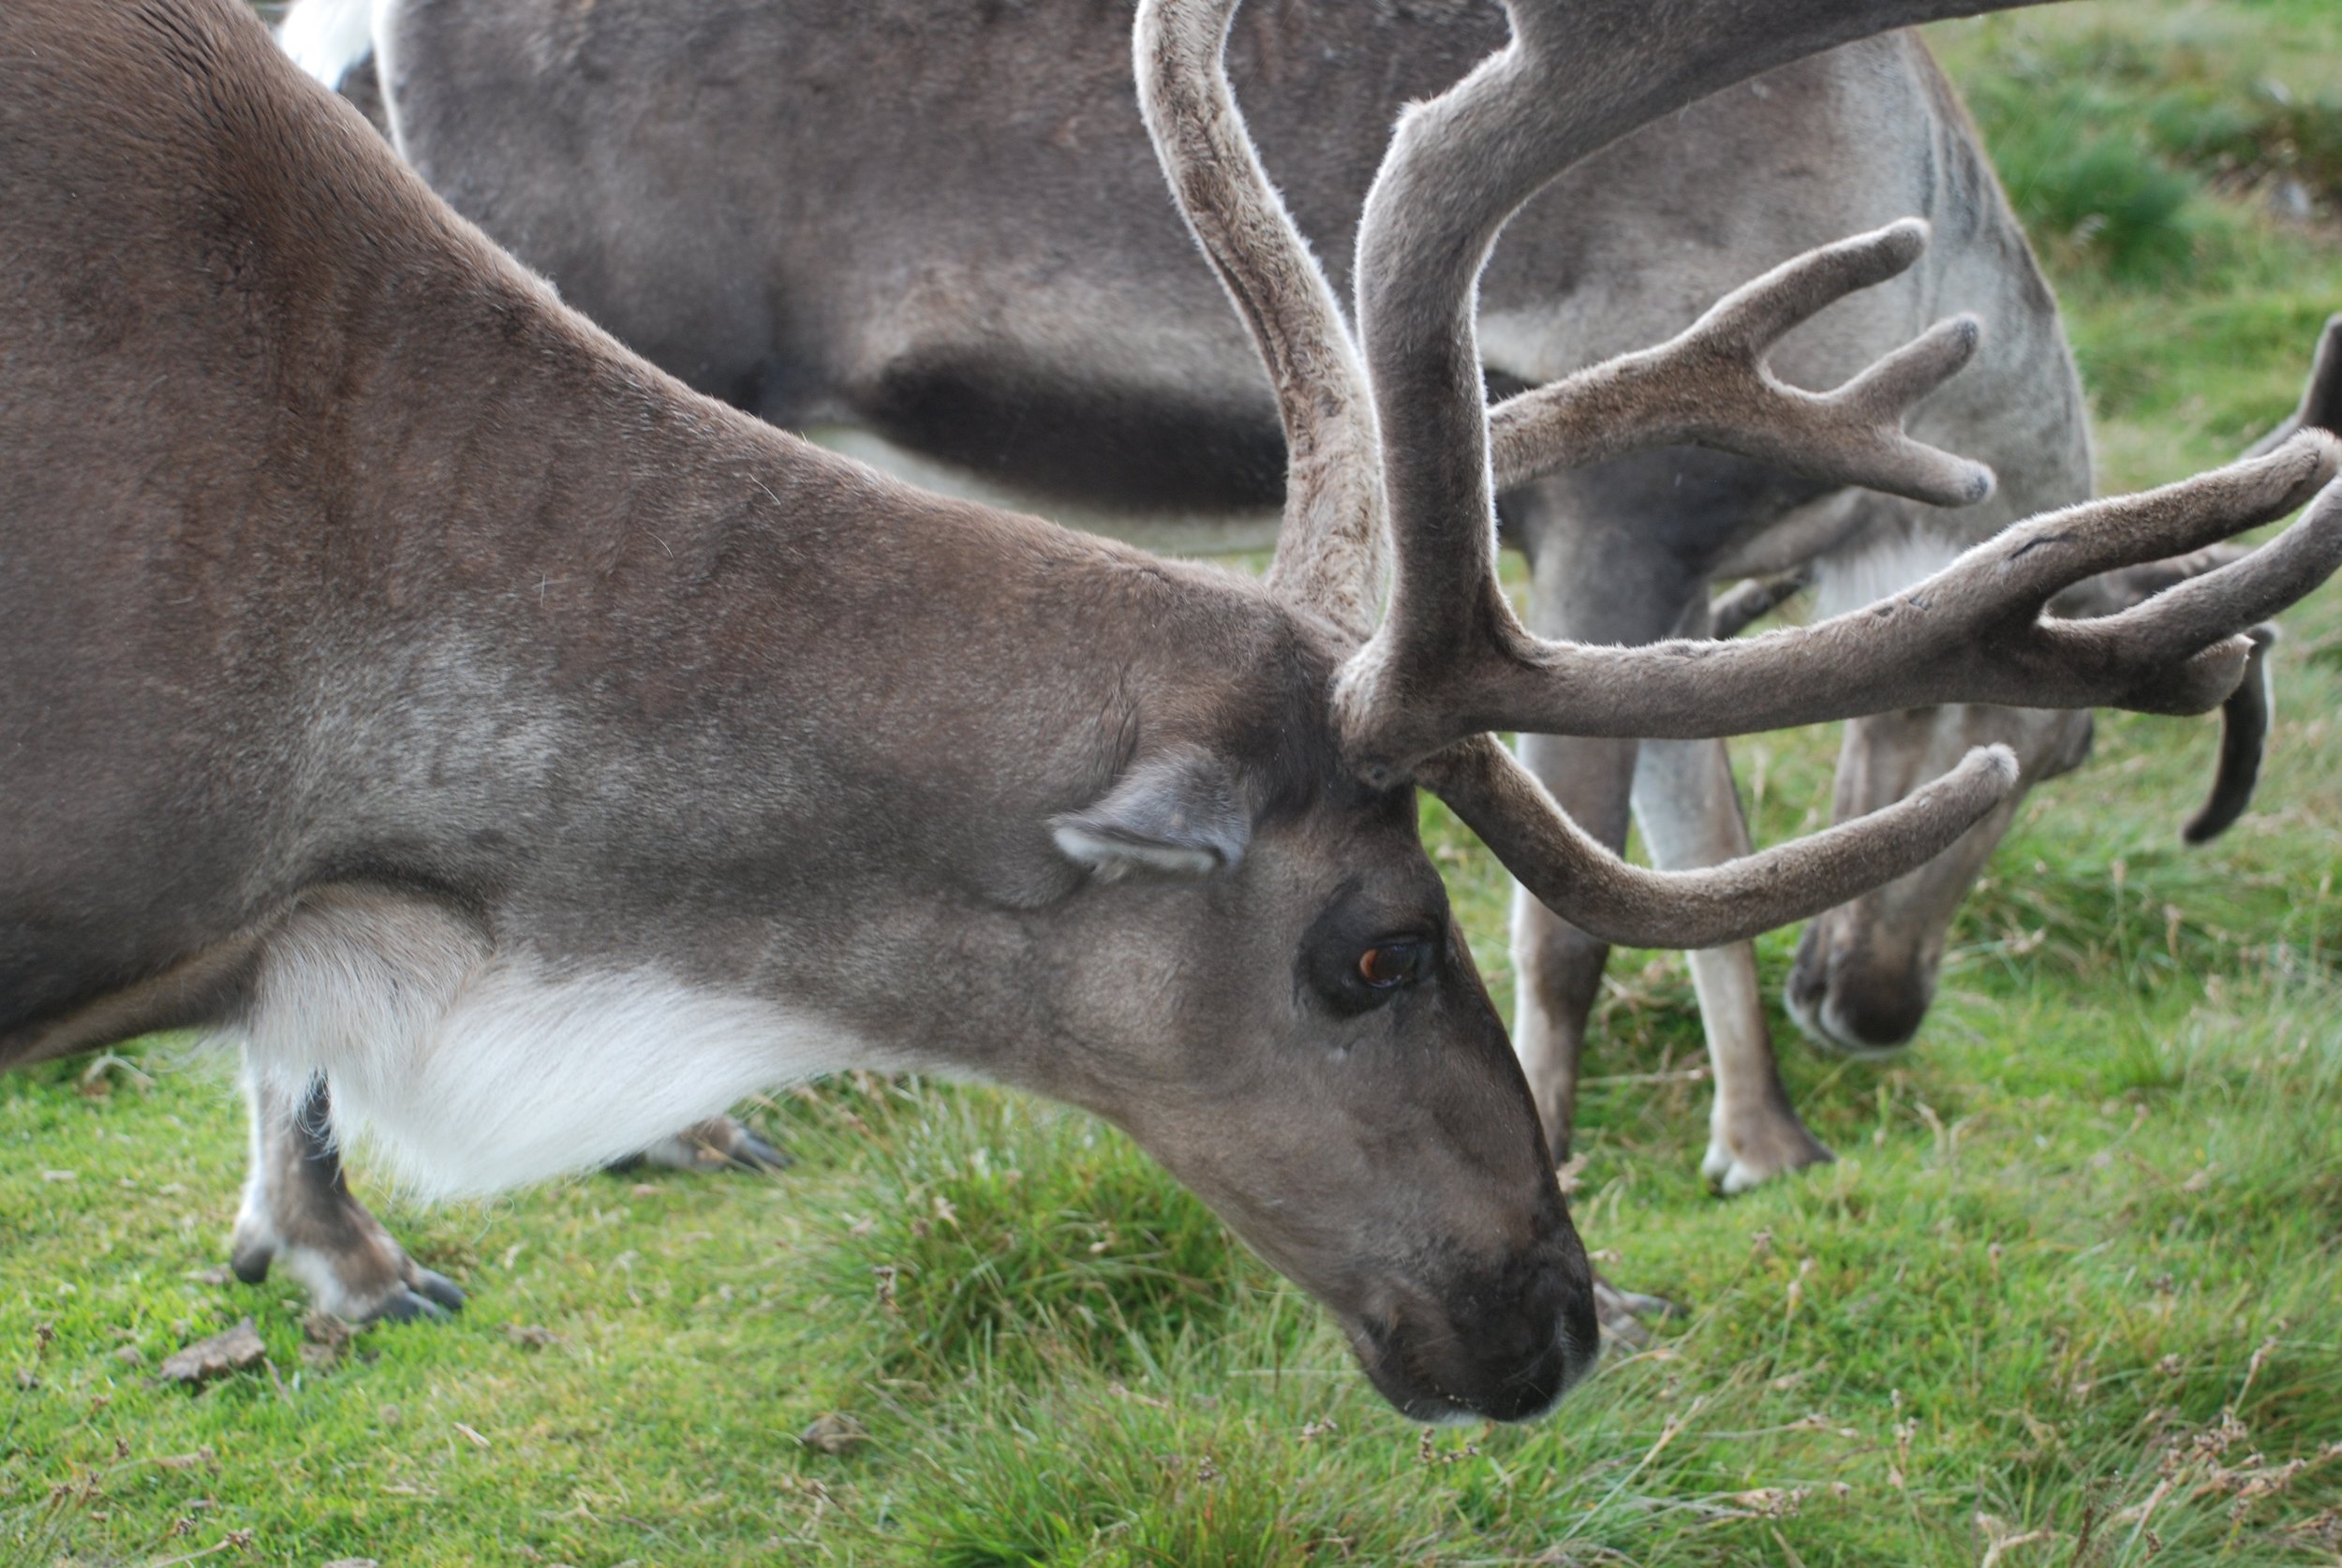 TrixPix-Cumhachd a' Yoik-Cairngorm reindeer herd-Photo by Beatrix A. Wood.jpg